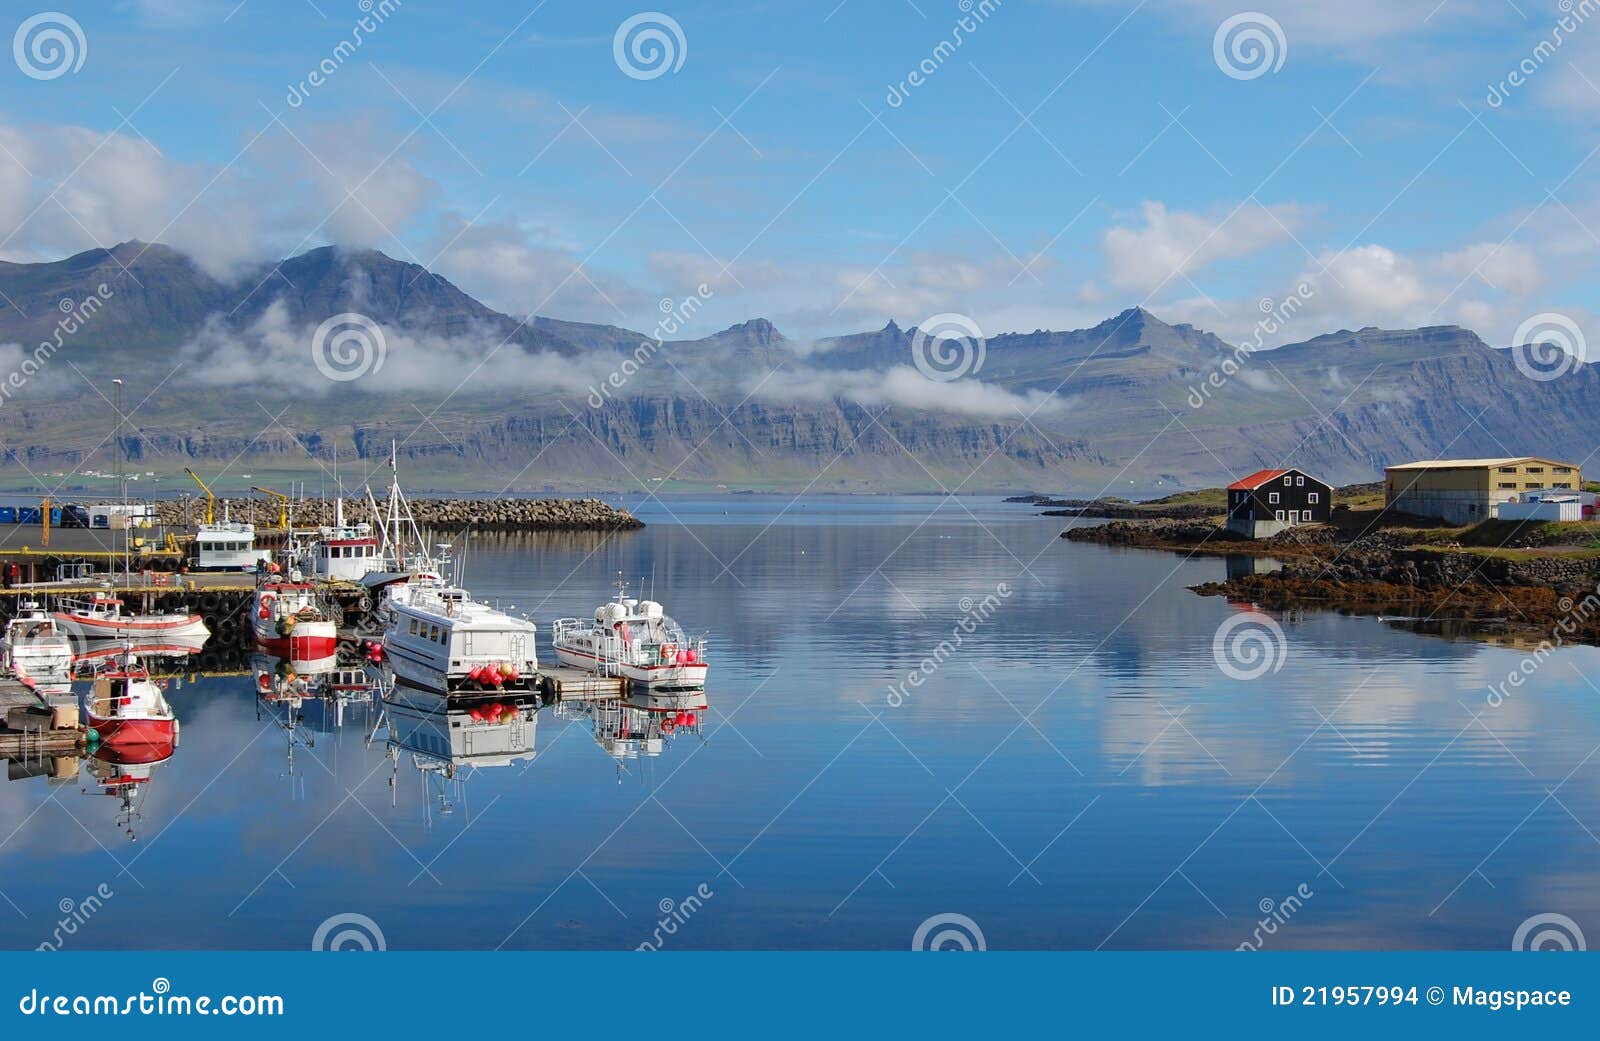 fishing village, djupivogur, iceland